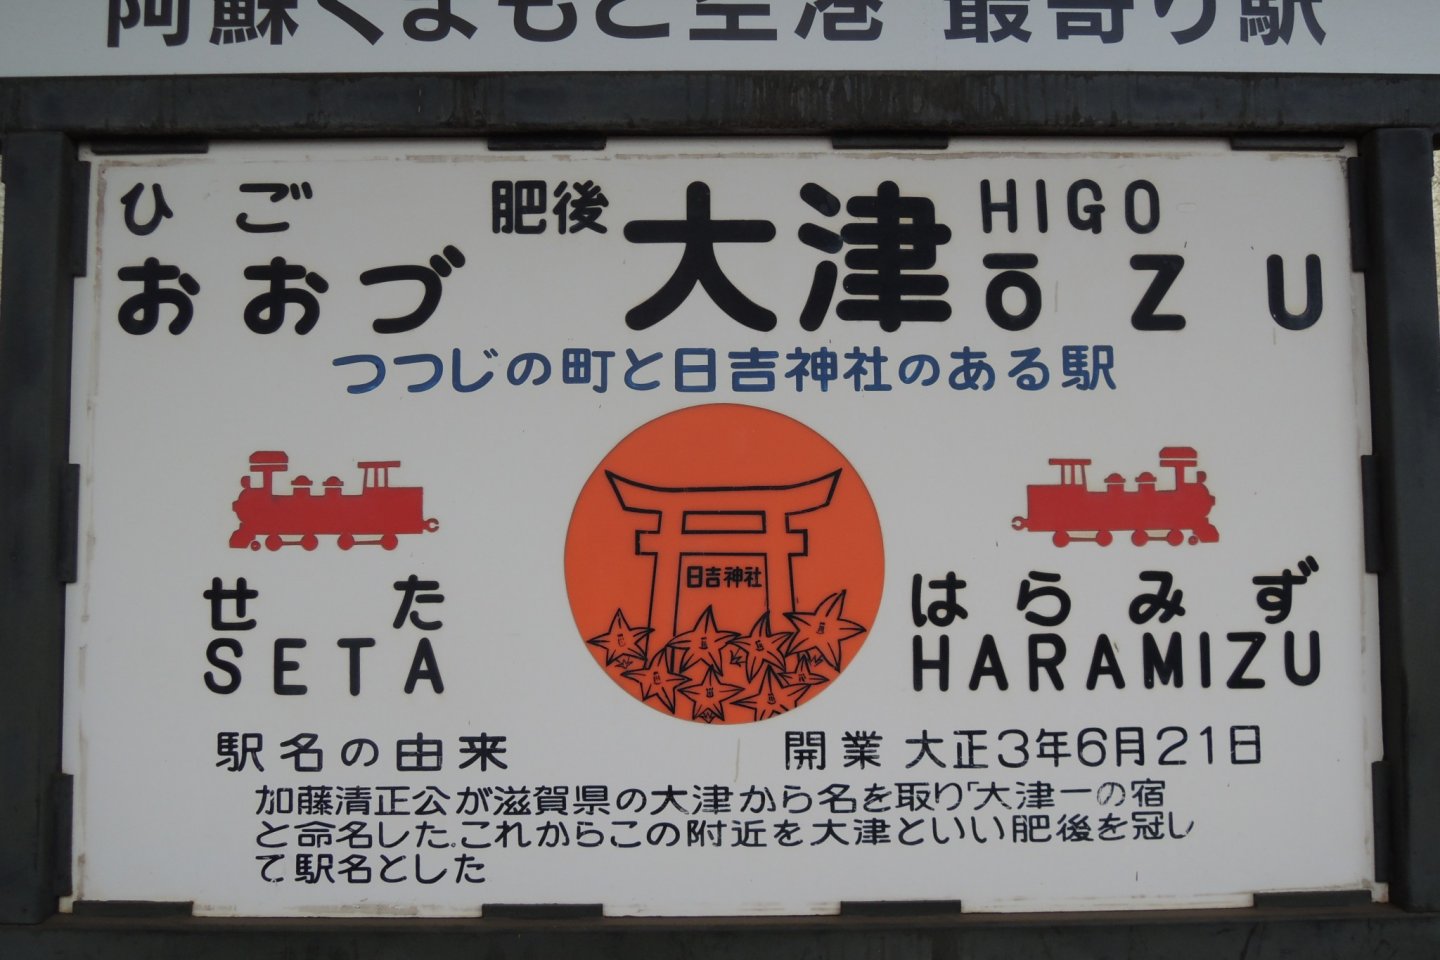 Artistic sign of Higo Ozu Station